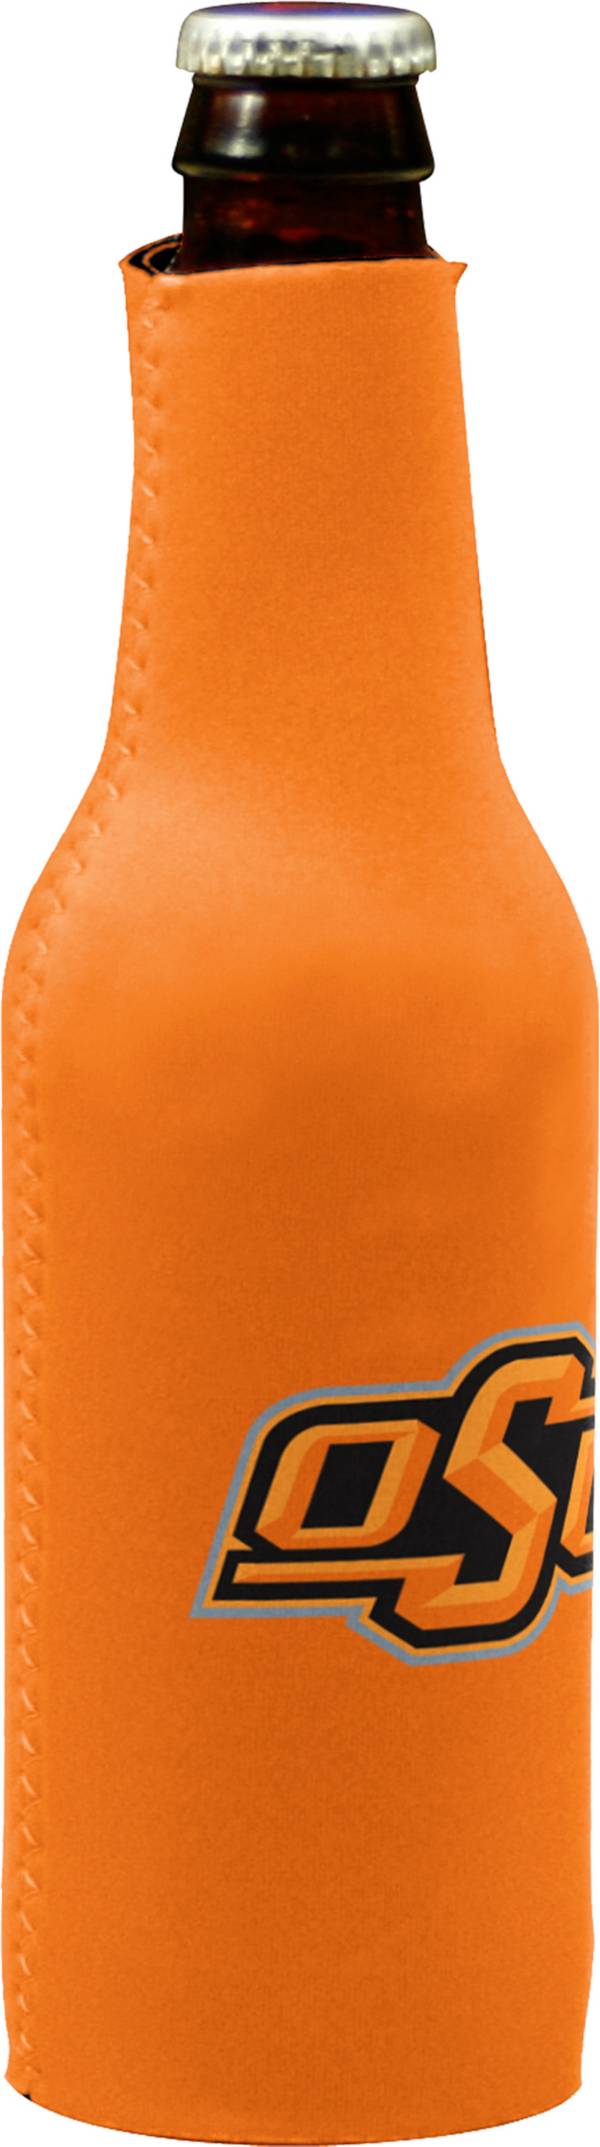 Oklahoma State Cowboys Bottle Koozie product image